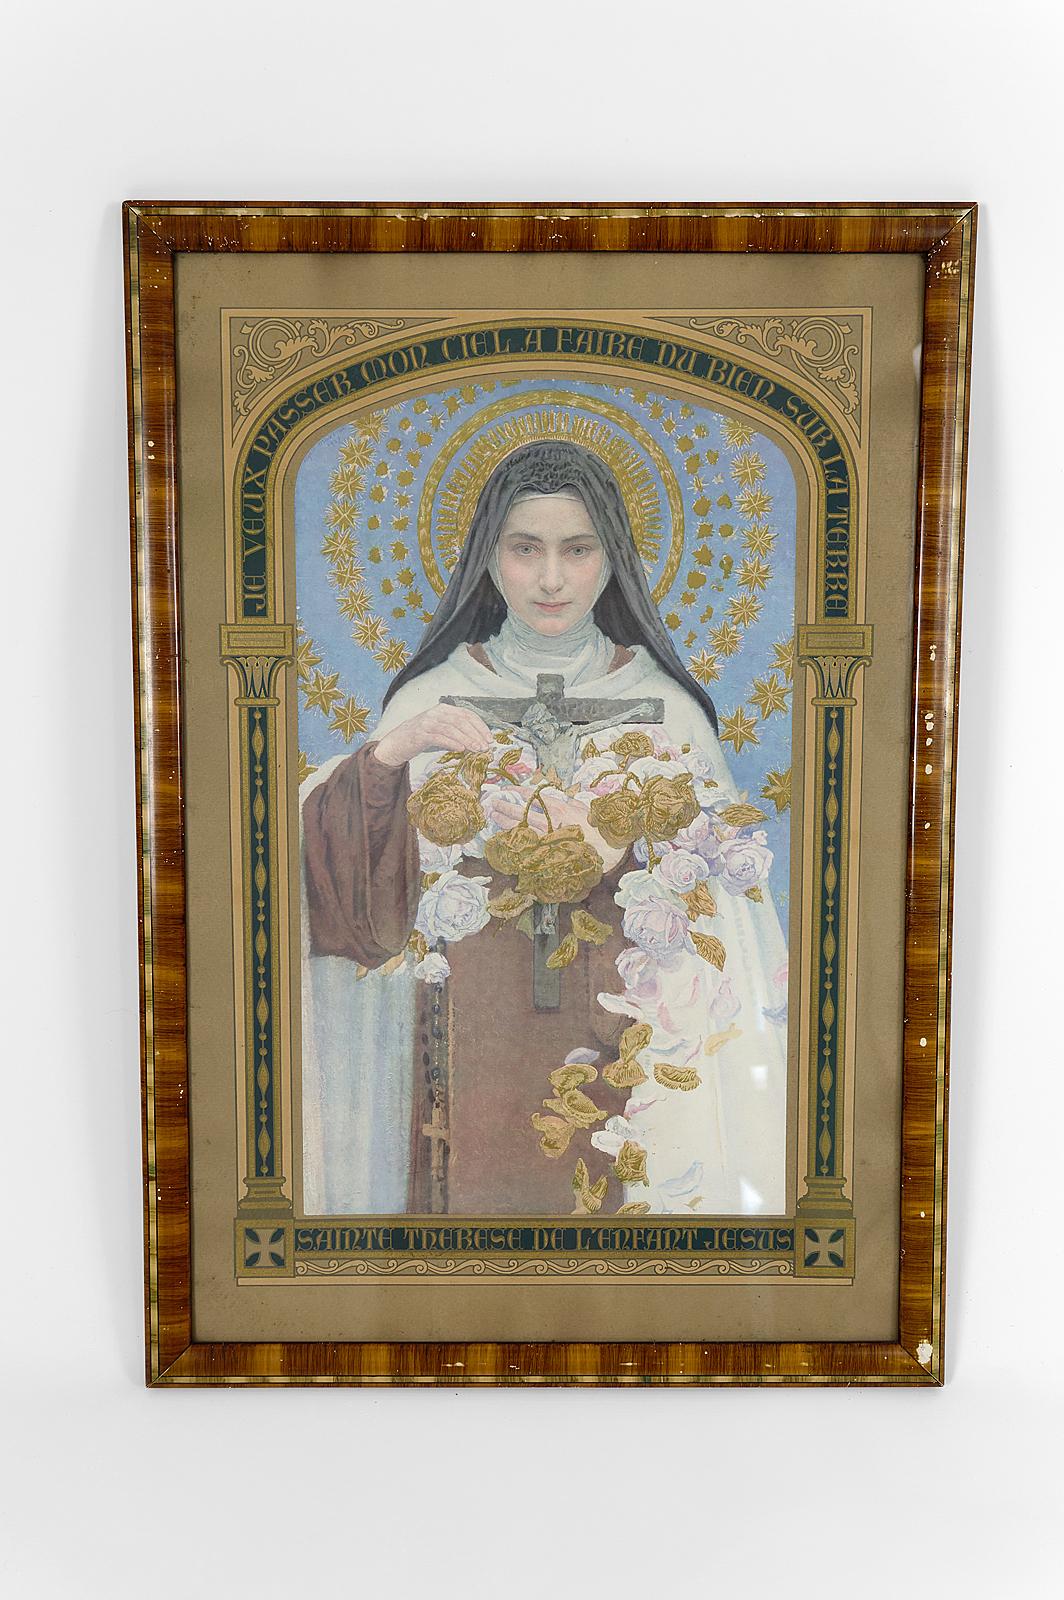 Hervorragende Lithografie mit Rahmen zum Thema Christentum, die eine Nonne im Karmeliterkleid mit Heiligenschein darstellt, die einen gekreuzigten Christus und einen Strauß weißer und goldener Rosen in den Händen hält. Auf der linken Seite ist auch